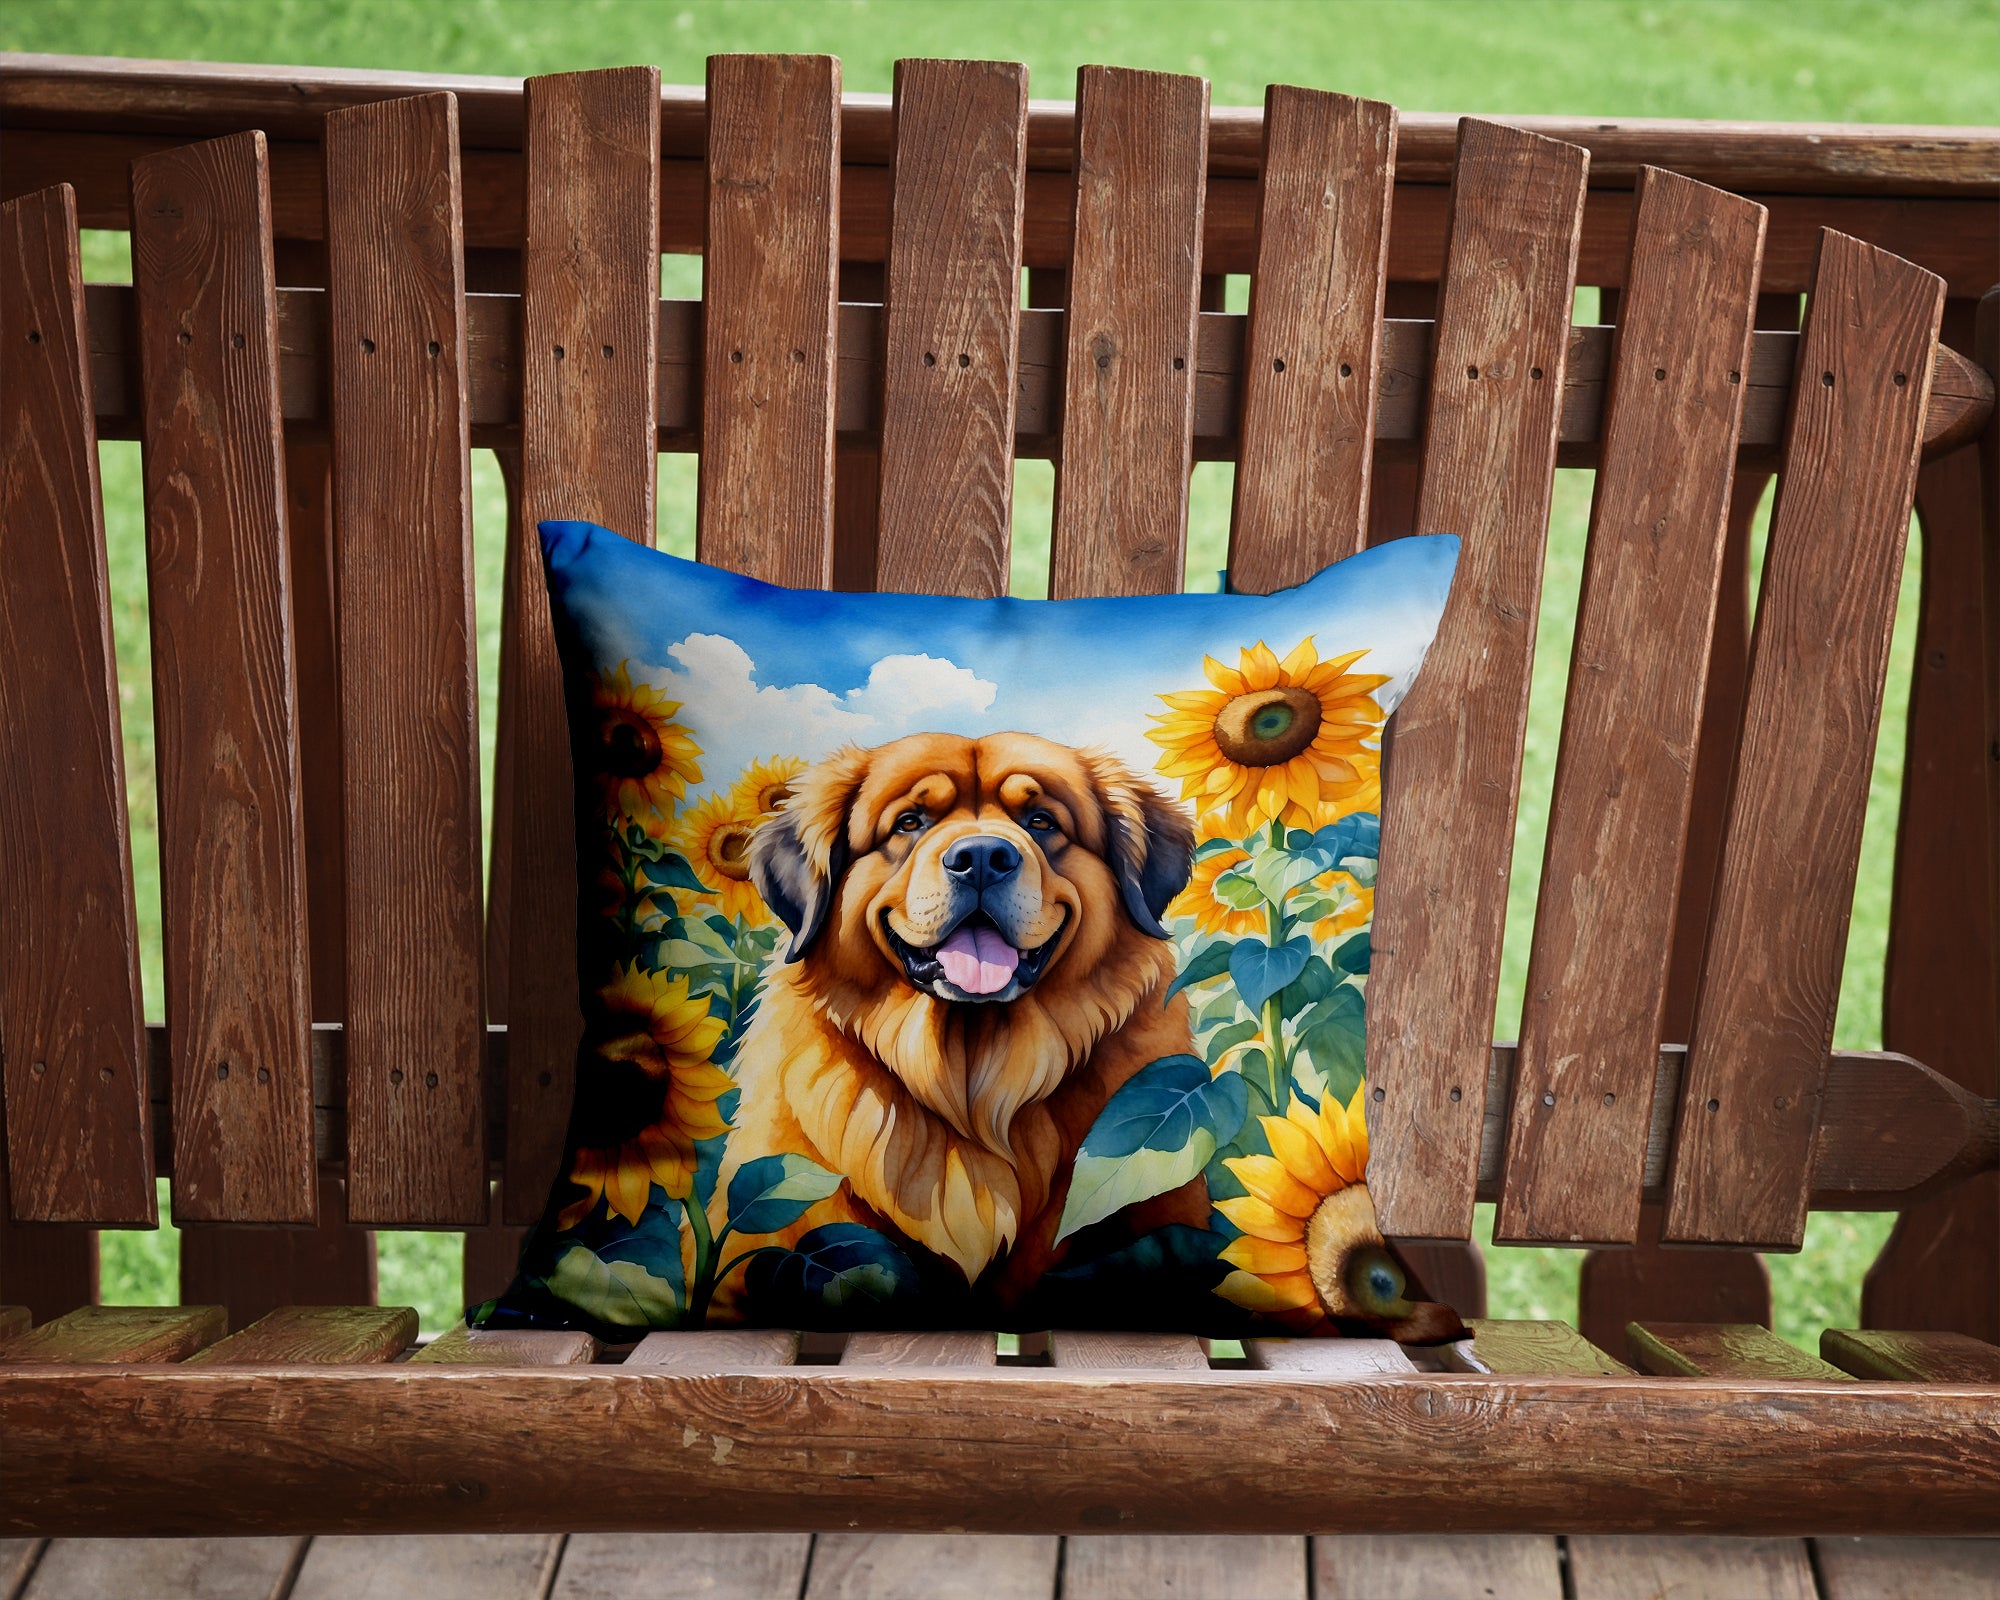 Buy this Tibetan Mastiff in Sunflowers Throw Pillow